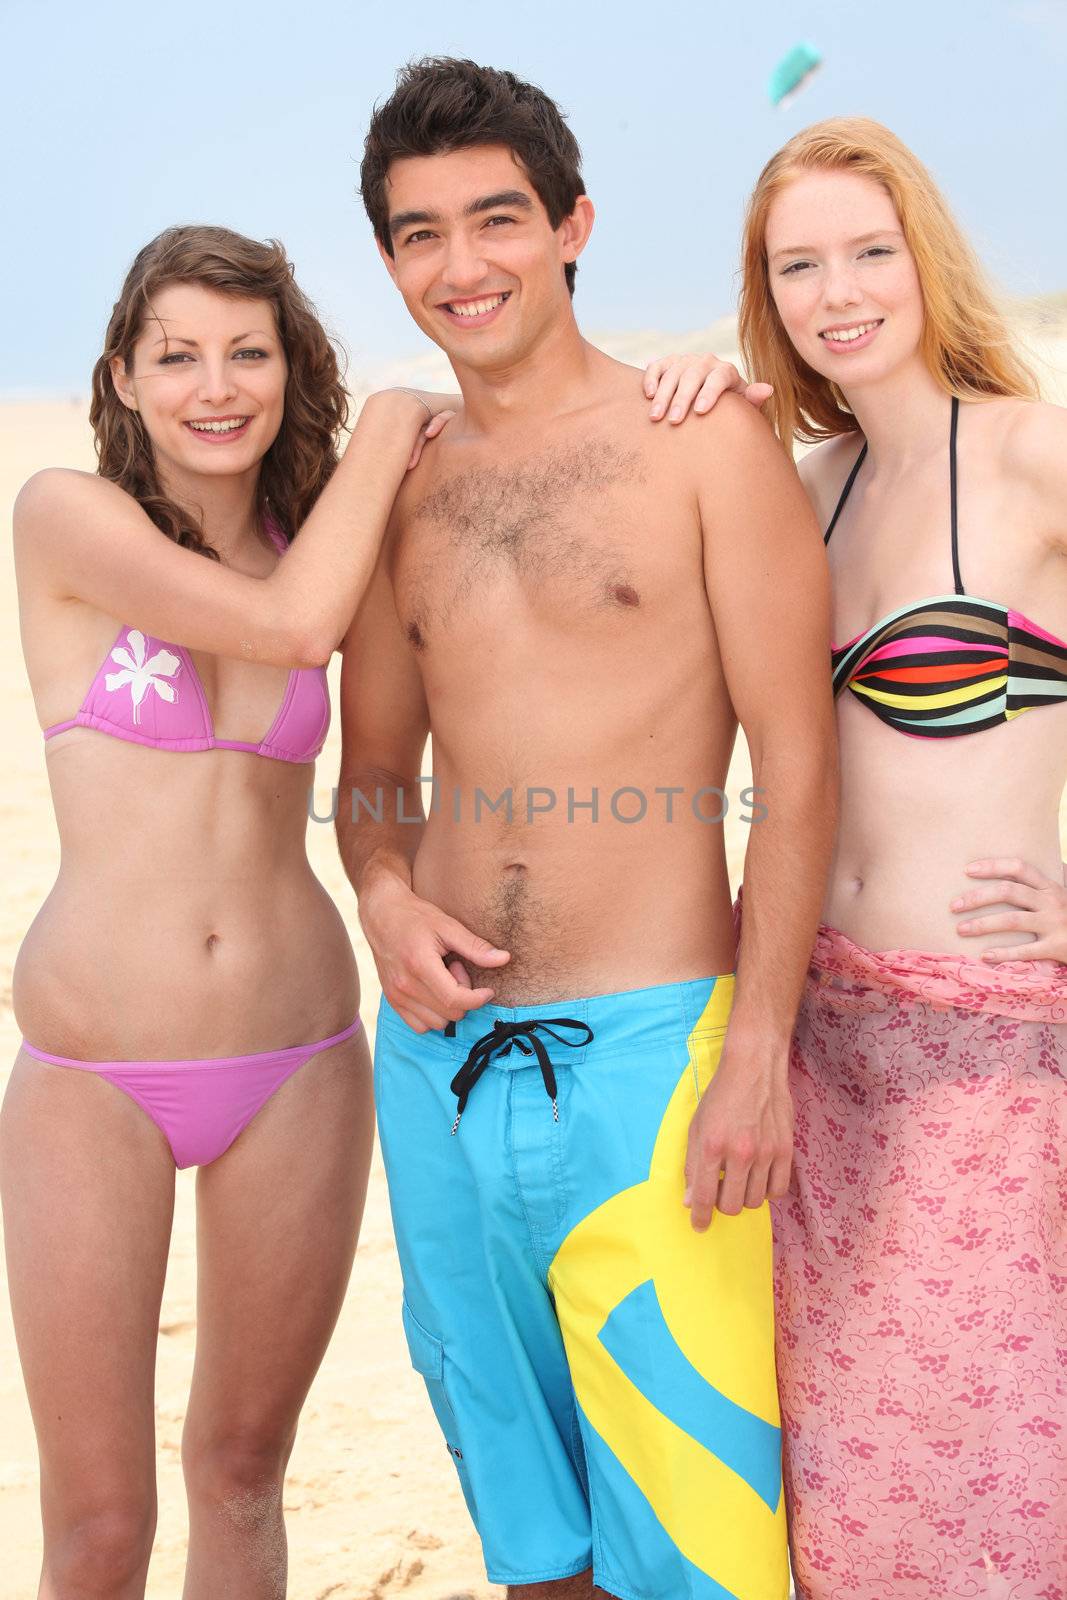 Three friends stood on a beach by phovoir